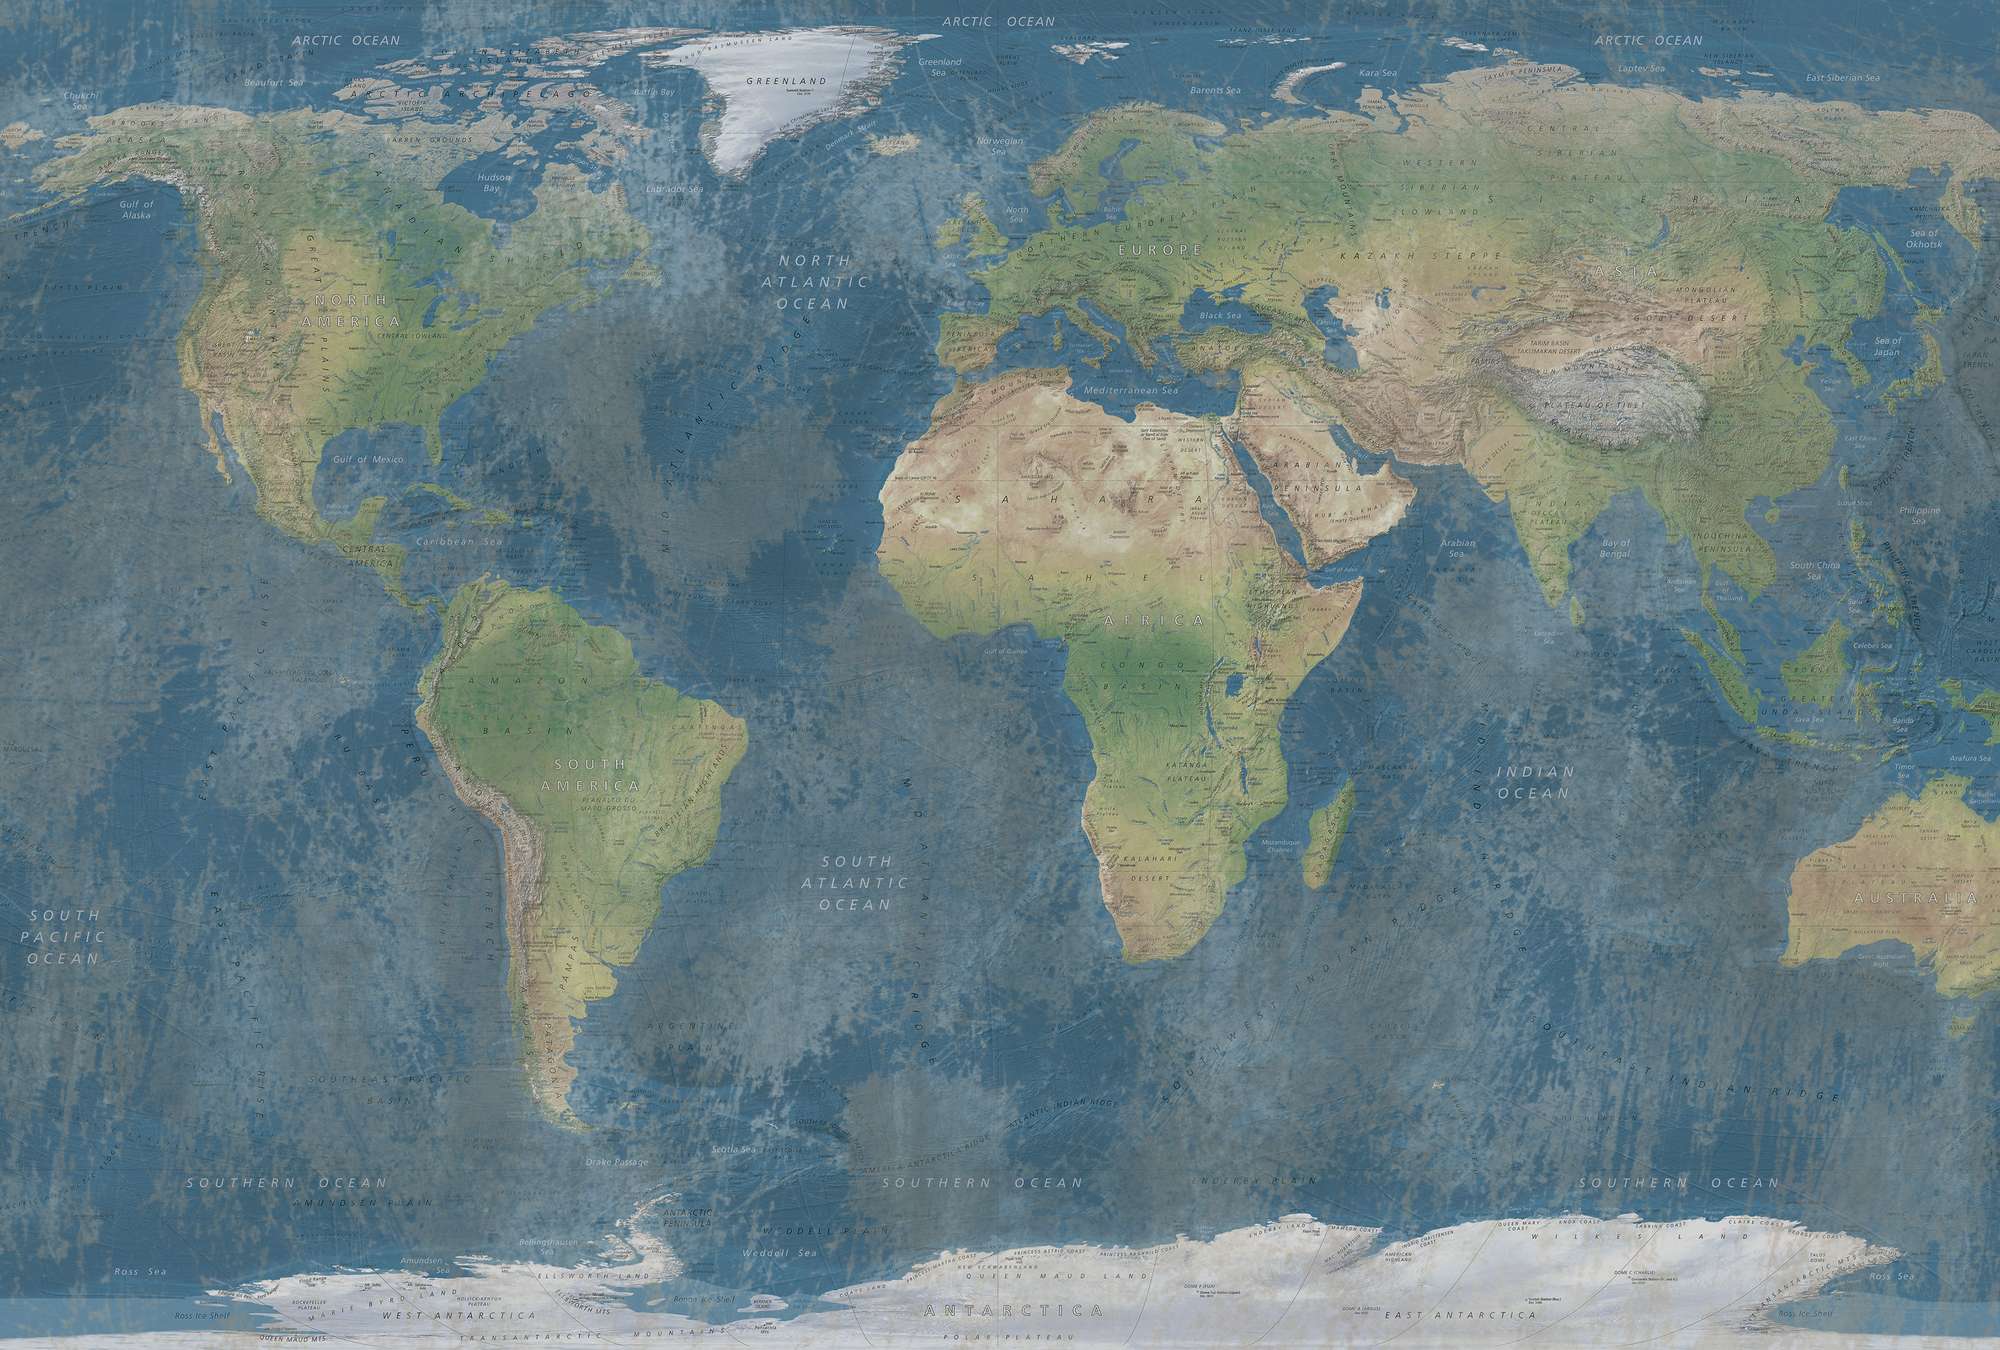             Mappa del mondo murale in una combinazione di colori naturali
        